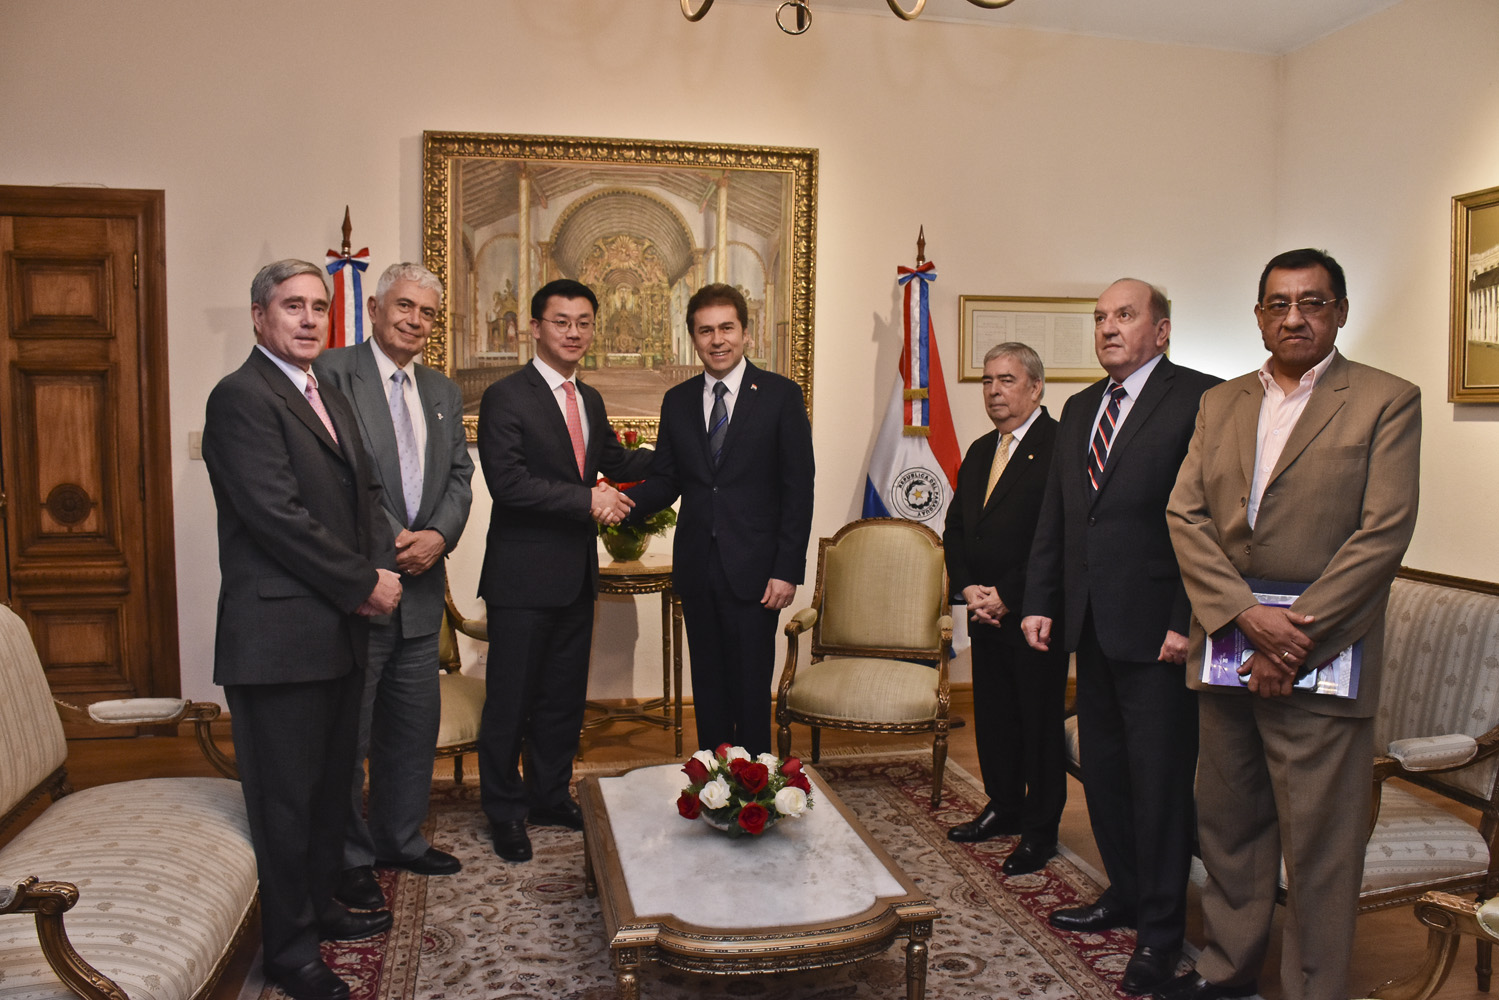 Canciller recibió al Gerente de la Fundación Heritage de Estados Unidos que elabora índices sobre prosperidad en Paraguay